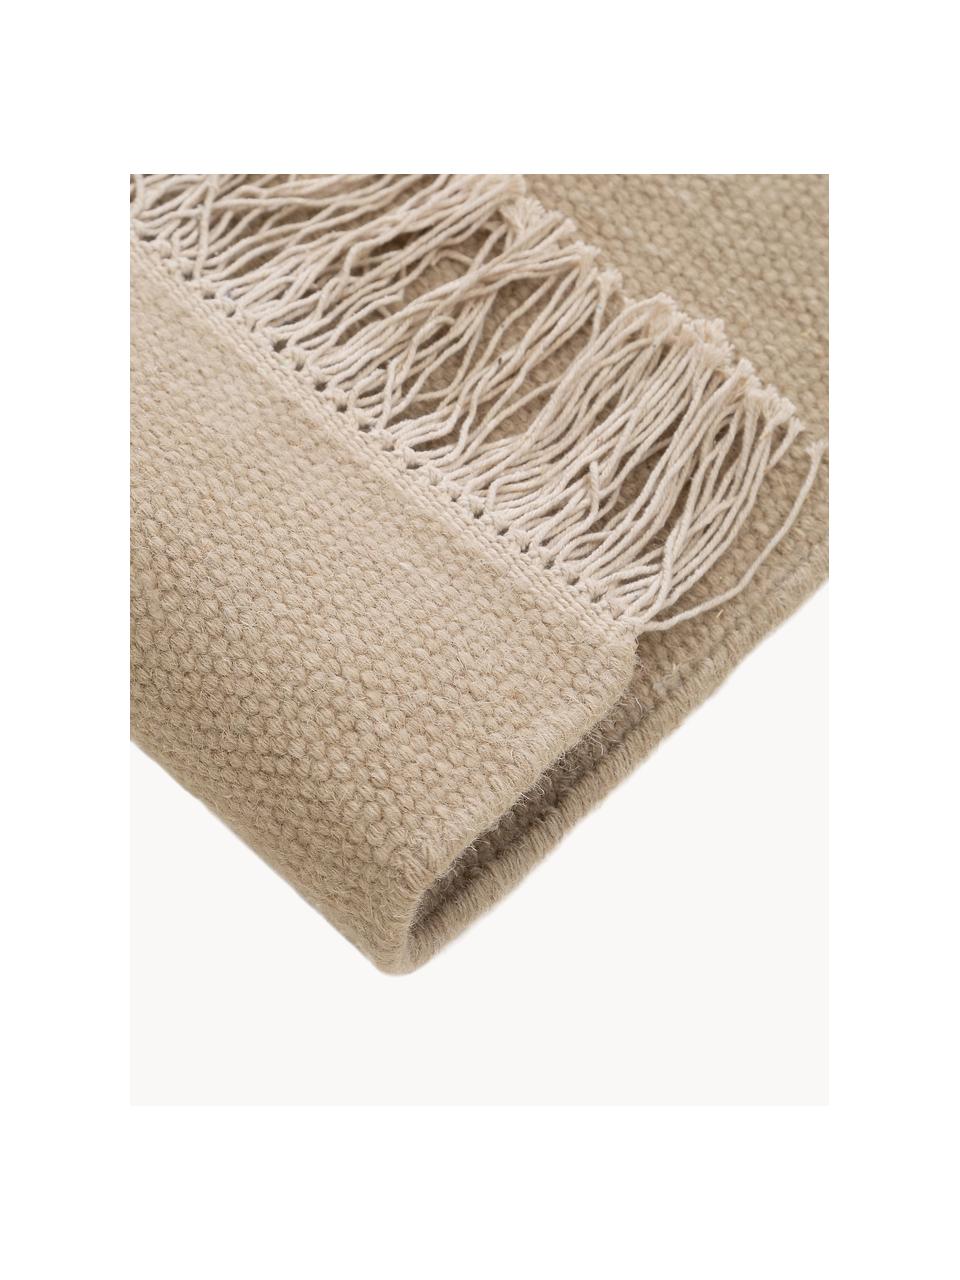 Ručne tkaný vlnený koberec so strapcami Liv, 80 % vlna, 20 %  polyester

V prvých týždňoch používania môžu vlnené koberce uvoľňovať vlákna, tento jav zmizne po niekoľkých týždňoch používania, Béžová, Š 80 x D 150 cm (veľkosť XS)